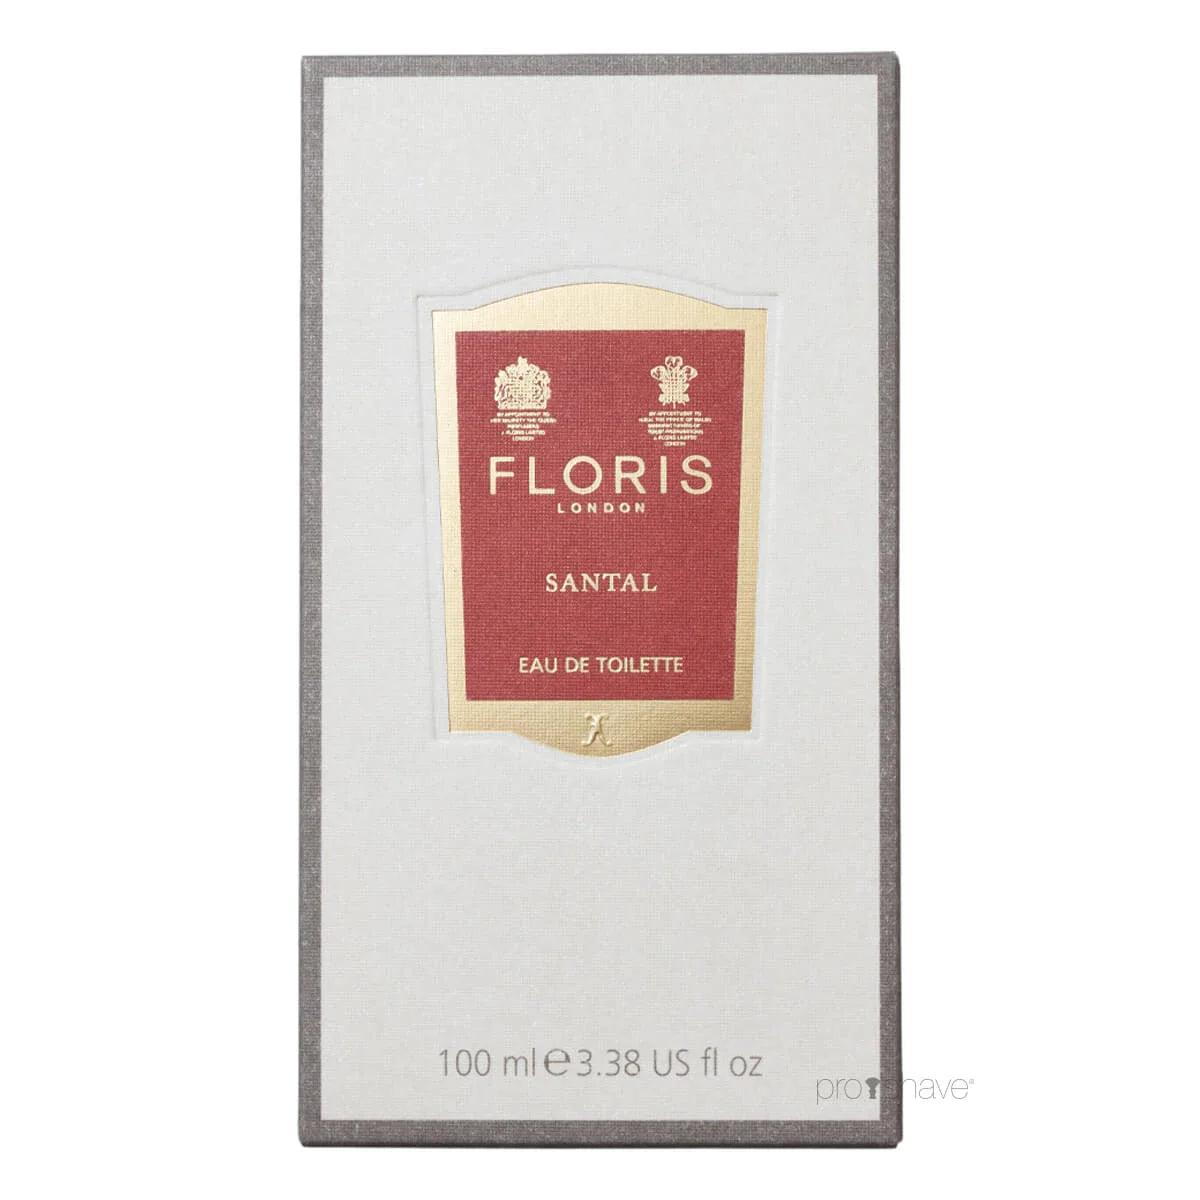 Floris Santal, Eau de Toilette, 2 ml | Parfyme | Floris London | JK SHOP | JK Barber og herre frisør | Lavepriser | Best